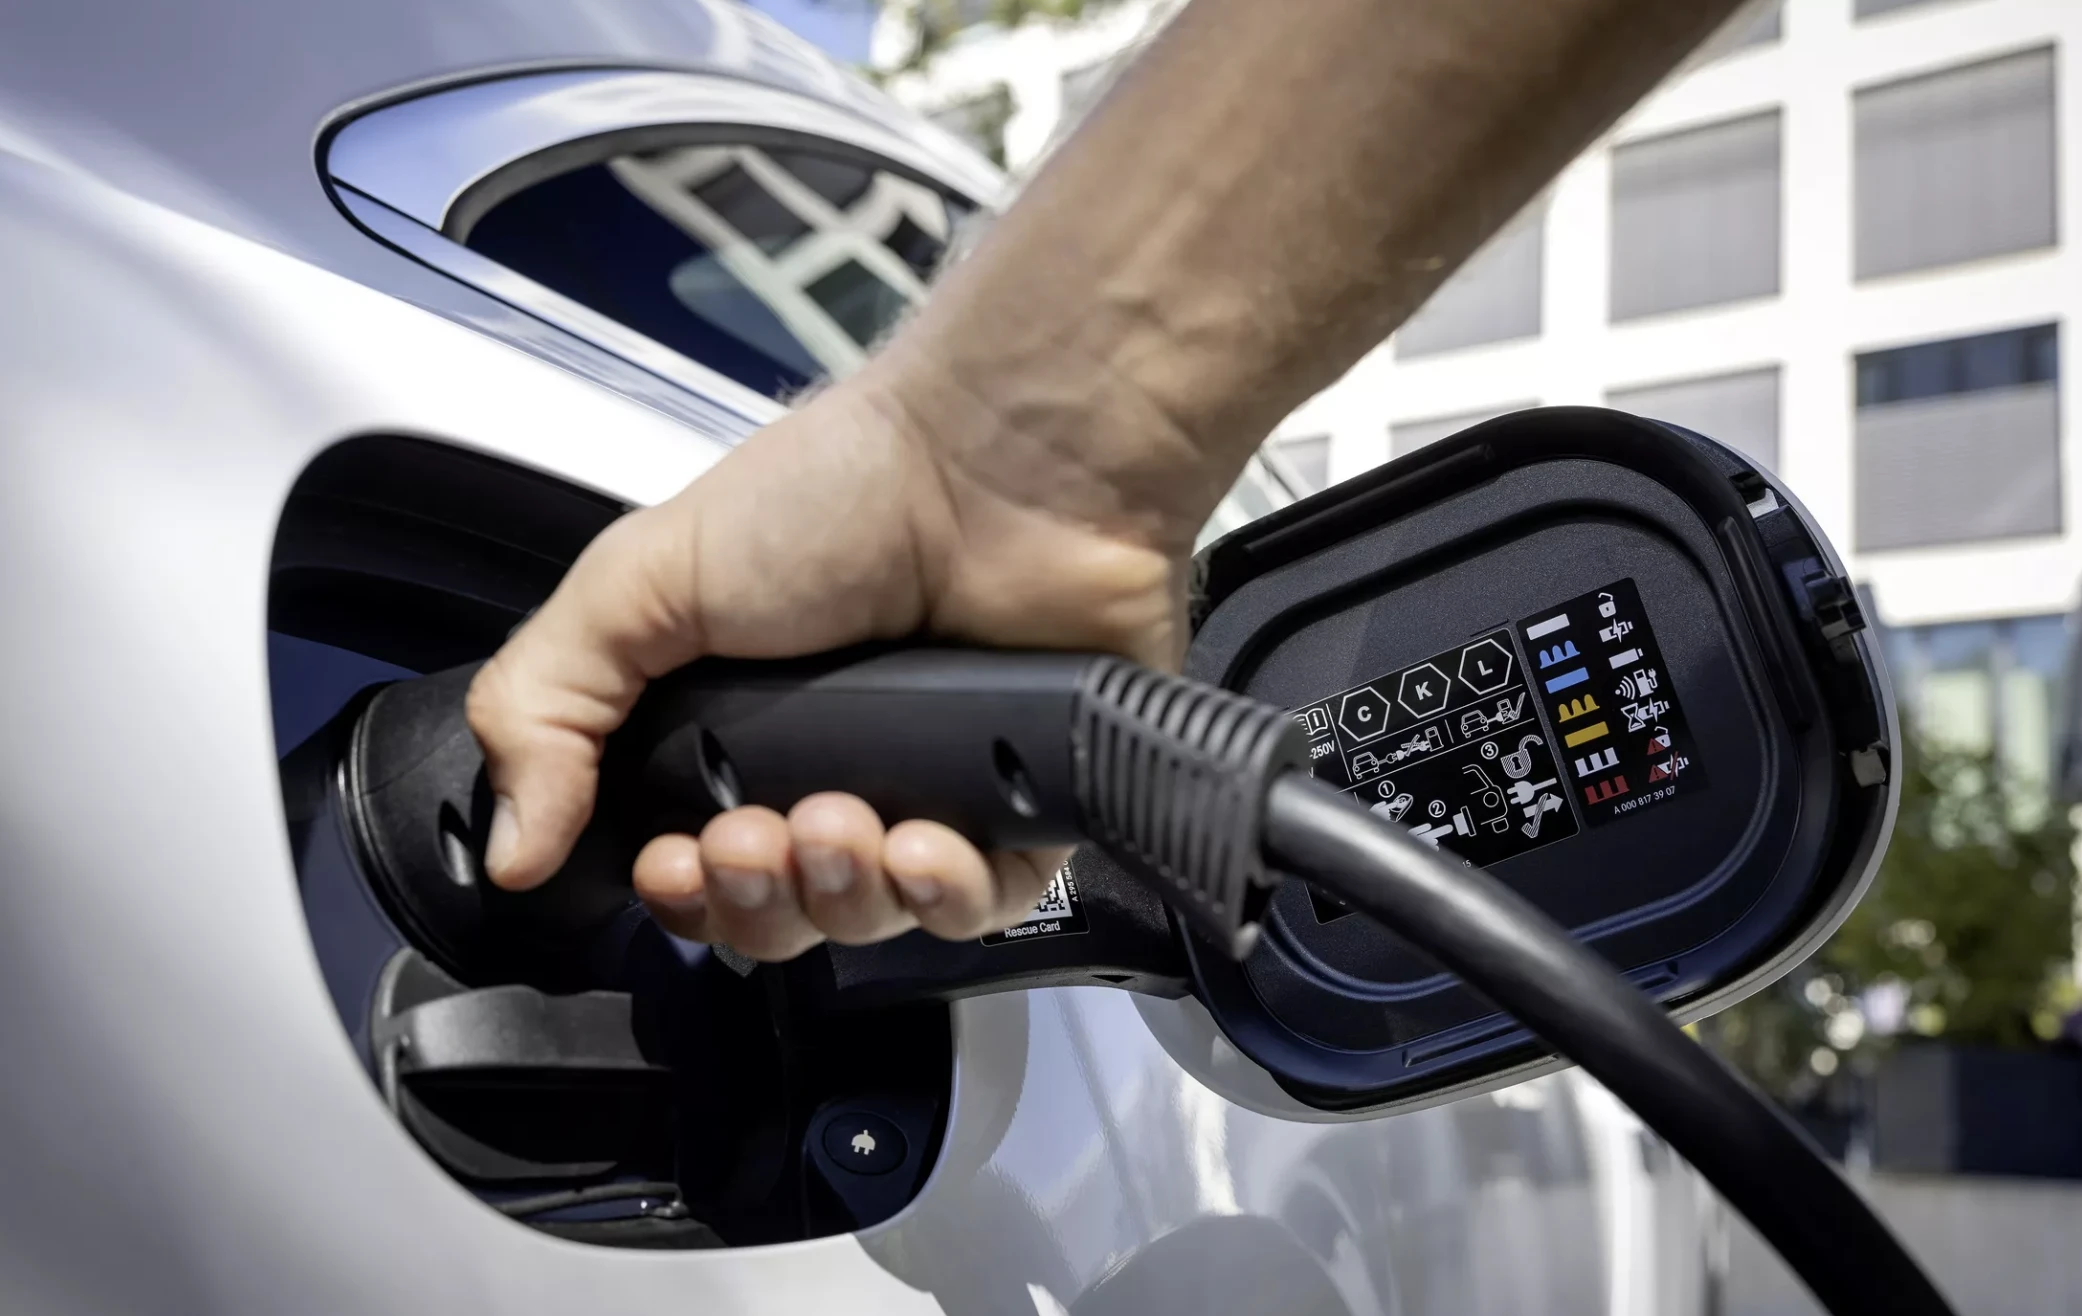 Lo ngại việc sạc pin, tỷ lệ khách mua ô tô điện sụt giảm